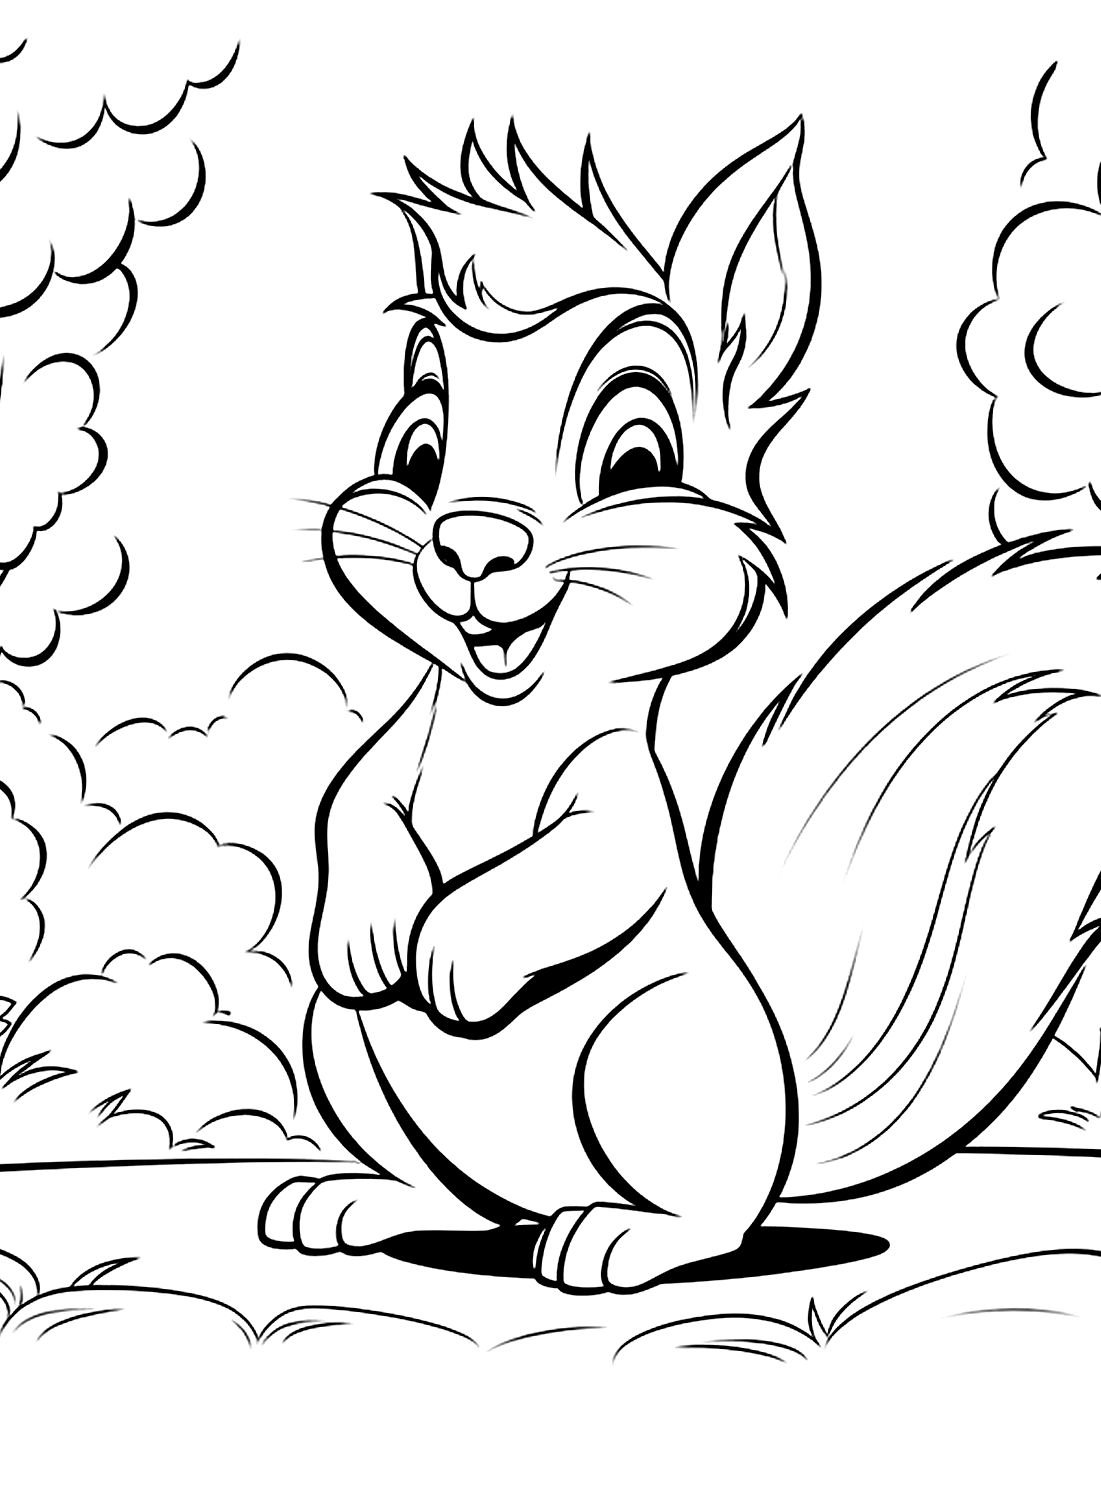 Раскраска Белка из Squirrel, которую можно распечатать